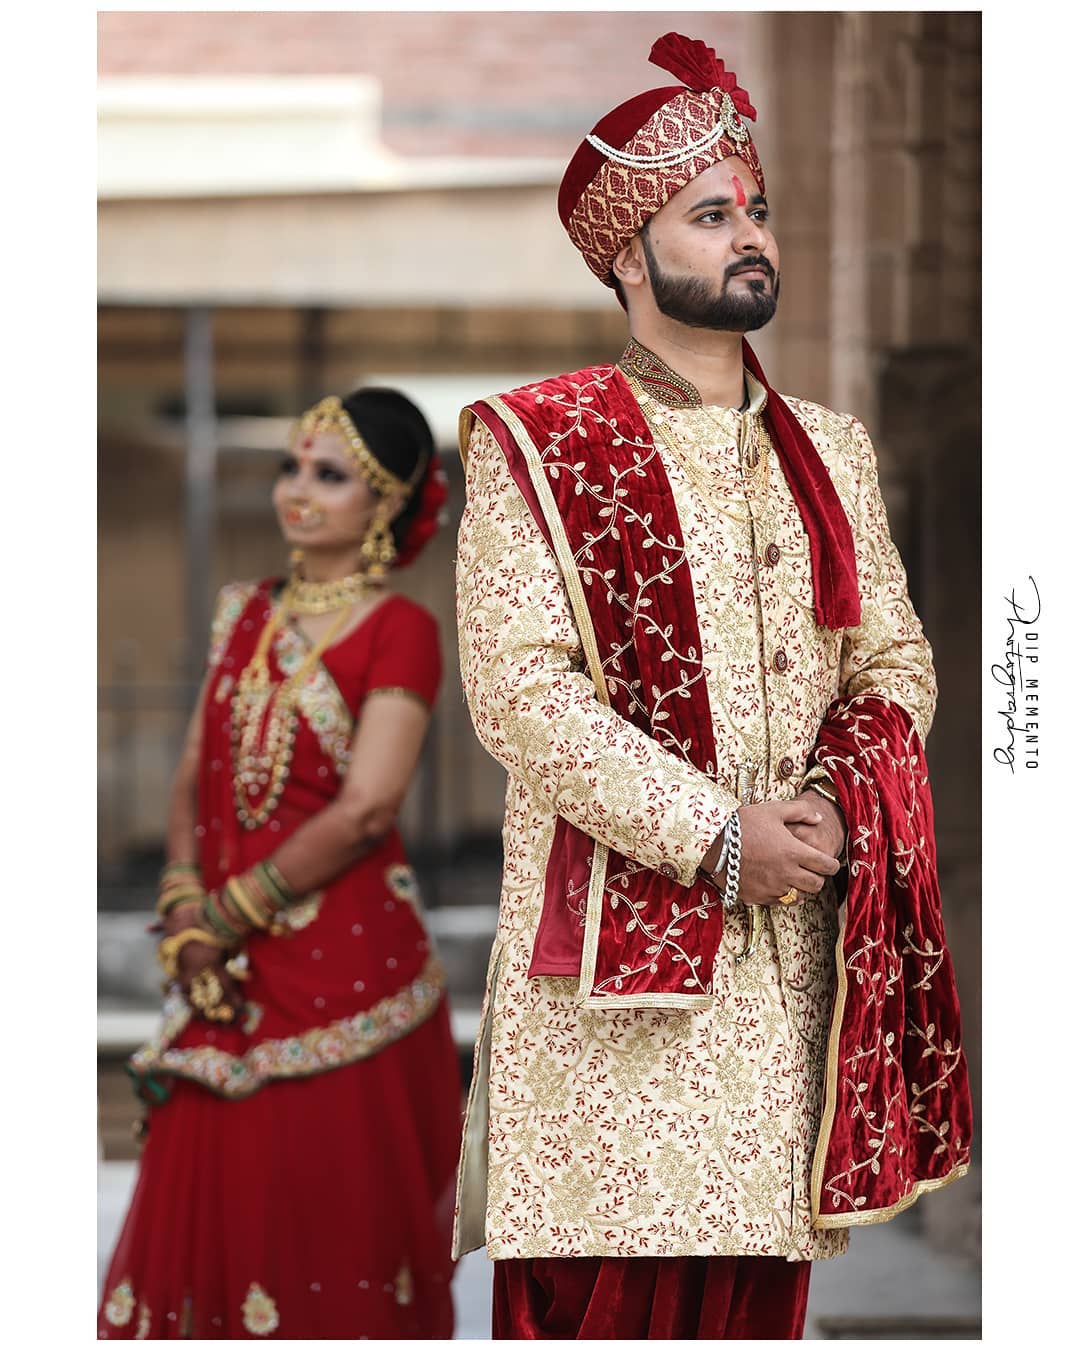 Mihir + Anjali Wedding Diaries
.
. 
#bigfatindianwedding
#lovelycoupleshootout  #weddingpictures
#dipmementophotography #preweddingphoto 
#photography  #manishkarkarofficial #ahmedabad #photographer #indianweddingbuzz #indianwedding #indiapictures #shaadisaga #instagram #weddedwonderland#indian_wedding_inspiration #coupleshoot#indianwedding #instaprewedding #wedwise#weddingplz #shaadiseason #weddingbells 
#indianweddingphotography#candidweddingphotography #9924227745 #mangofolk 
#weddingpictures #weddingz #shadiwaliinspirations #prewedding #preweddingshoot#preweddingphoto #coupleshoot 
@wedzo.in  @indian_welding_inspiration @indianstreetfashion @weddingz.in @weddingsutra @wedmegood @bridalaffairind @theweddingbrigade @weddingplz @weddingfables @indian_wedding_inspiration @weddingdiary @_punjabi_weddings @dulhaanddulhan @thebridesofindia @indianweddings @weddingdream @themangofolk @indianweddingbuzz @shaadisaga @zo_wed @thinkshaadi @weddingz.in